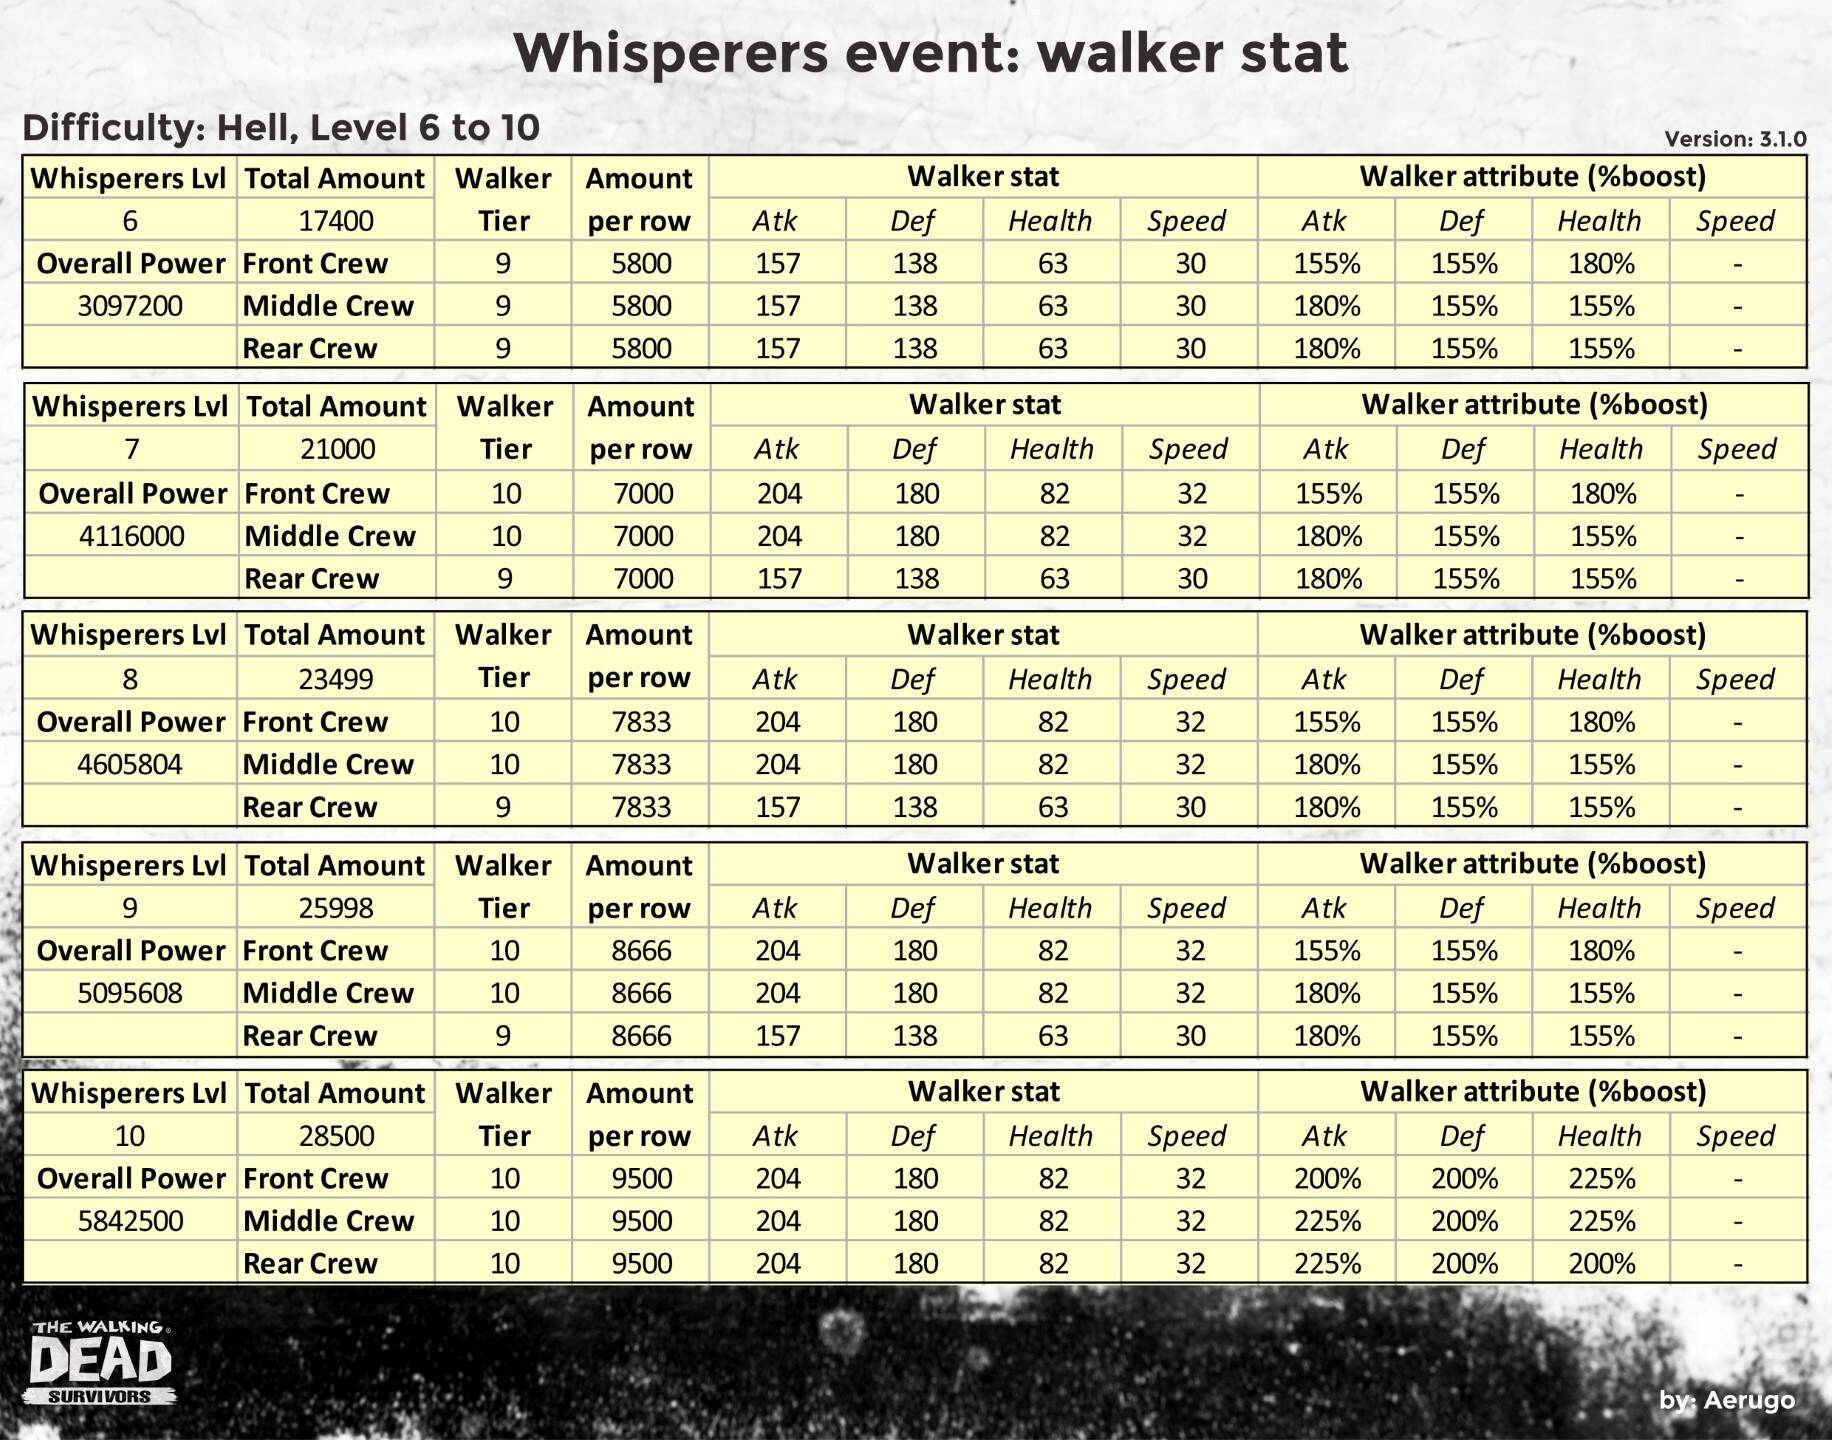 Whisperers_walkerstat_v3.1.0_part18 (1).jpg